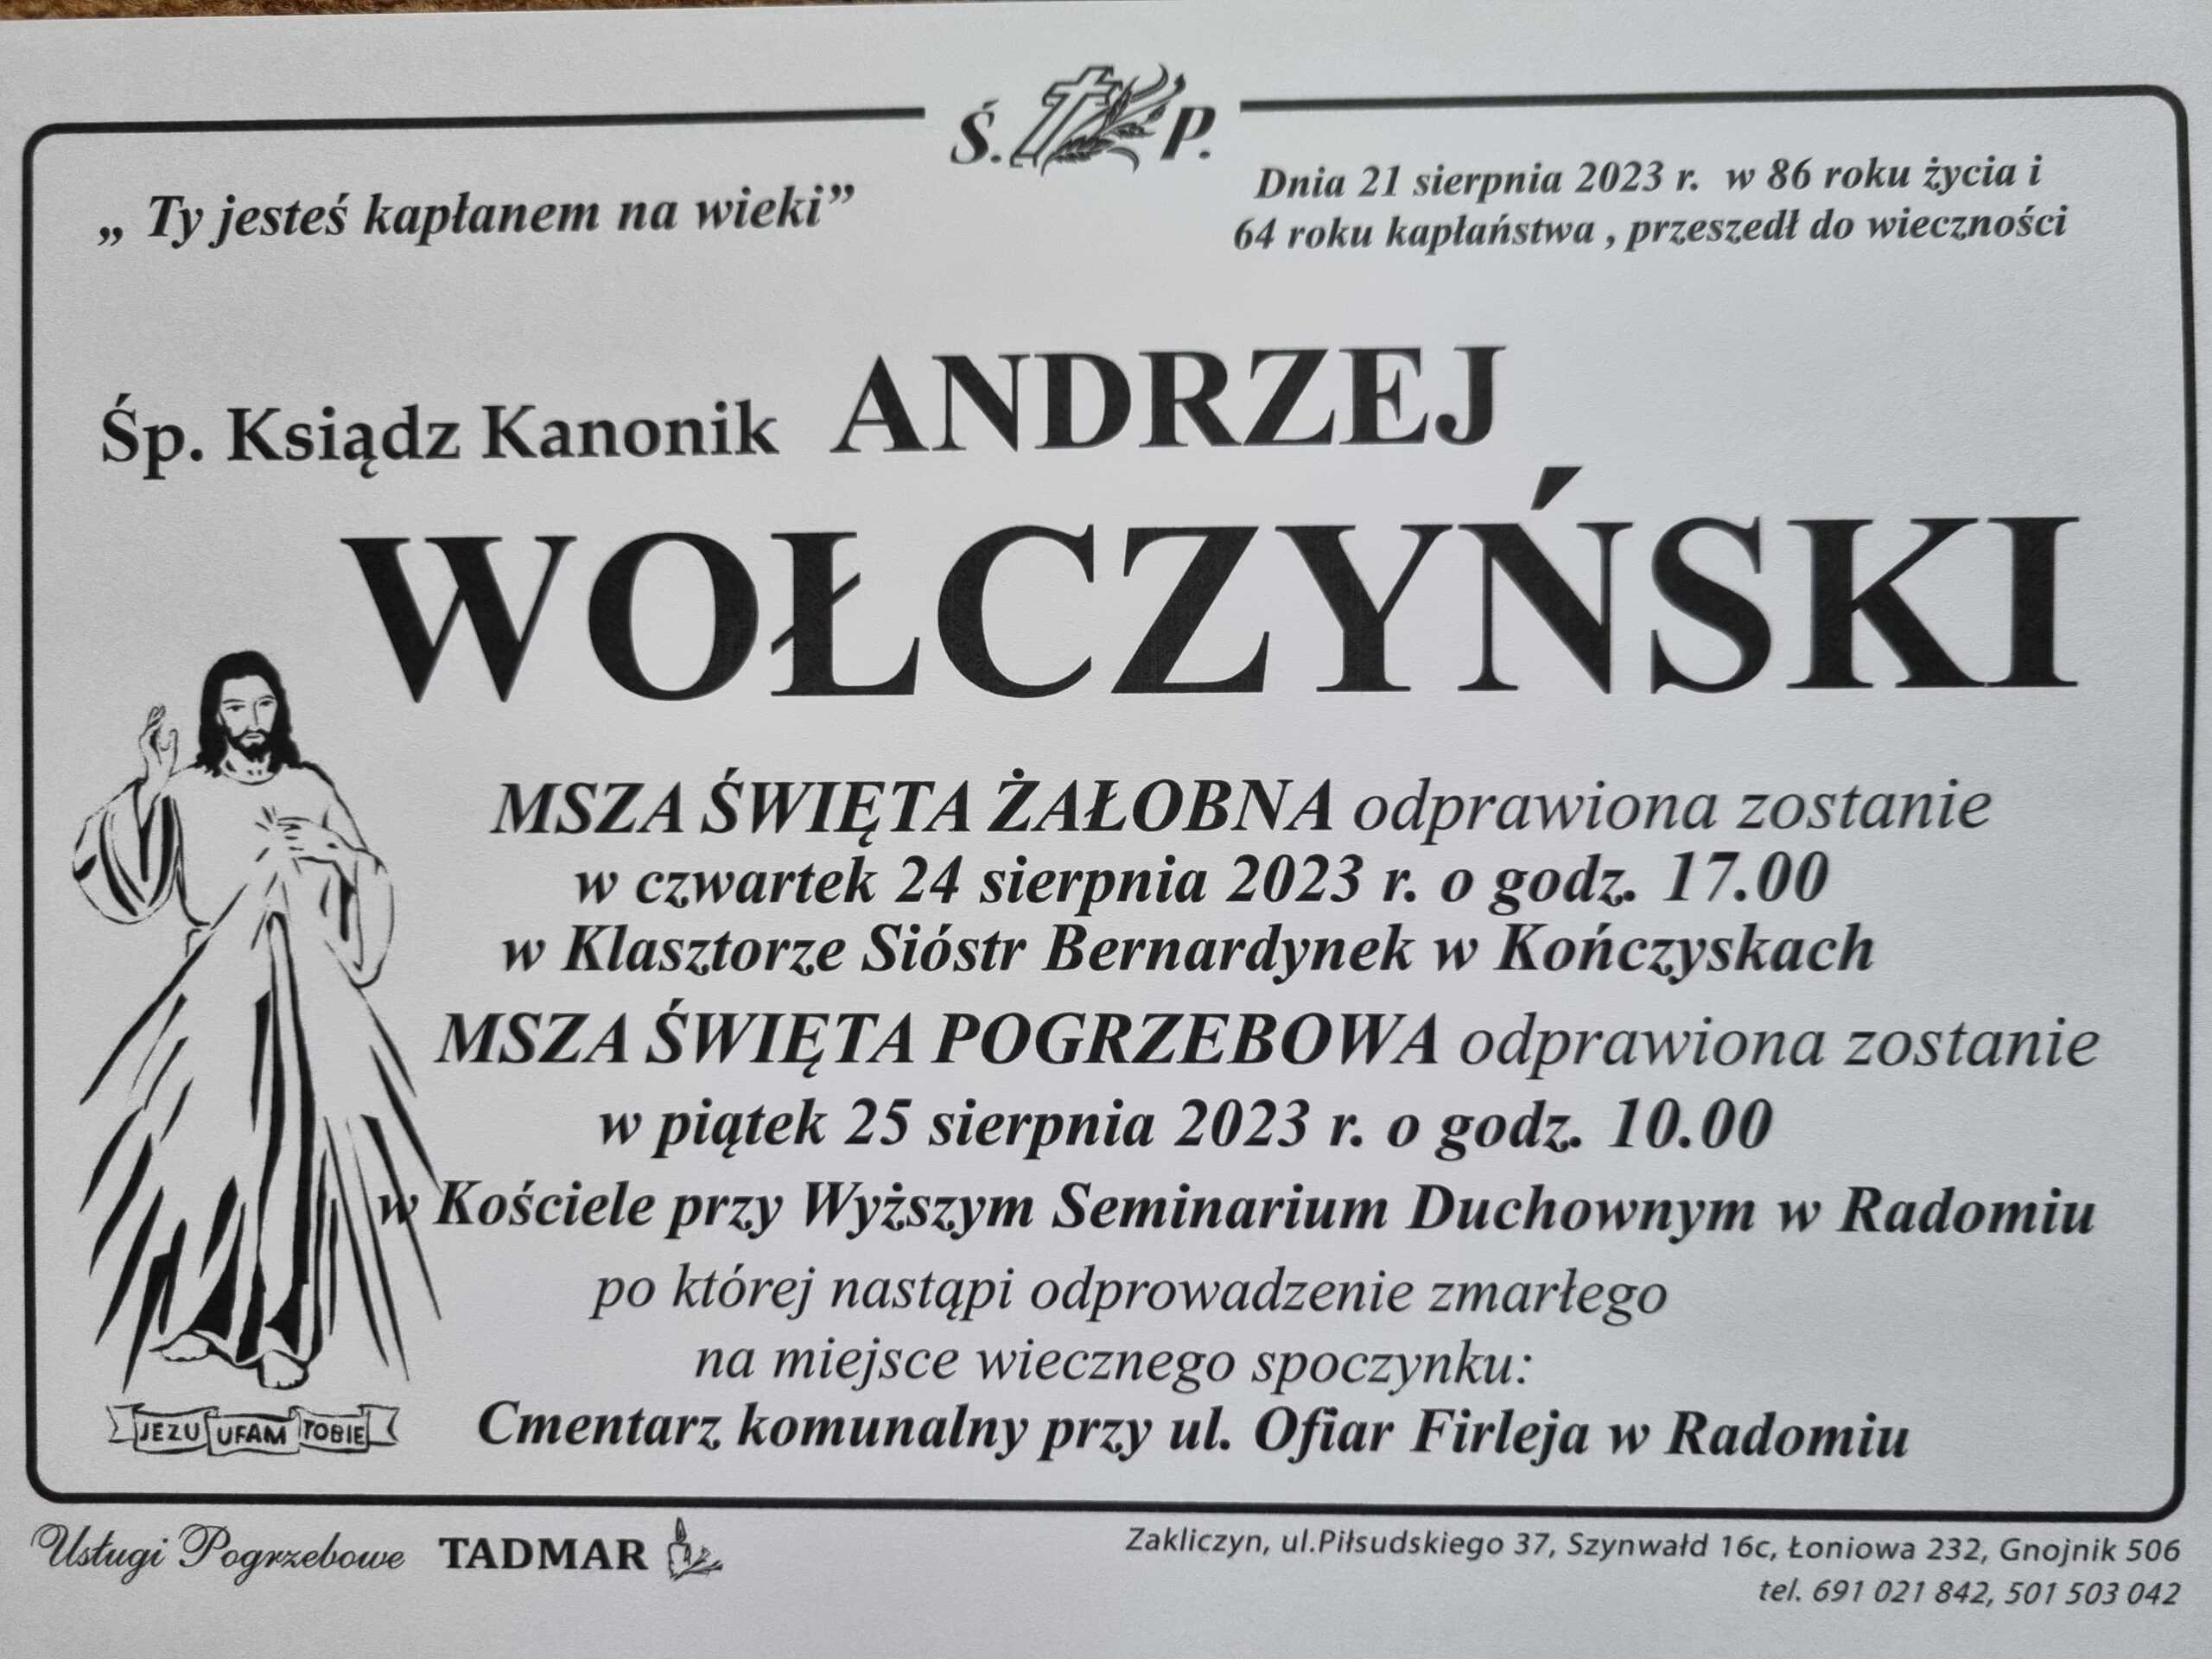 Zmarł Ksiądz kanonik dr Andrzej Wołczyński